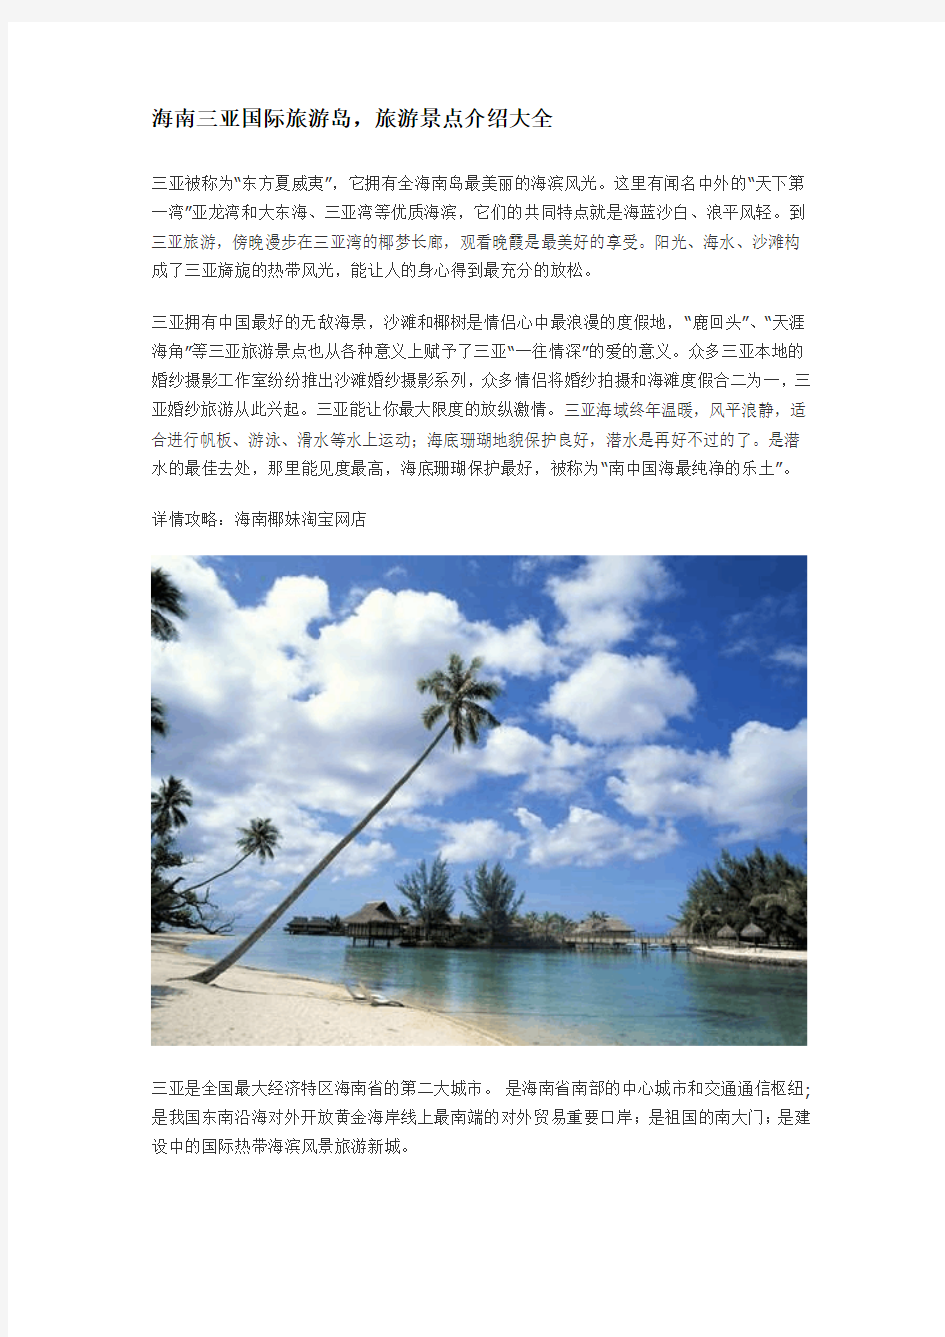 海南三亚国际旅游岛 旅游景点介绍大全